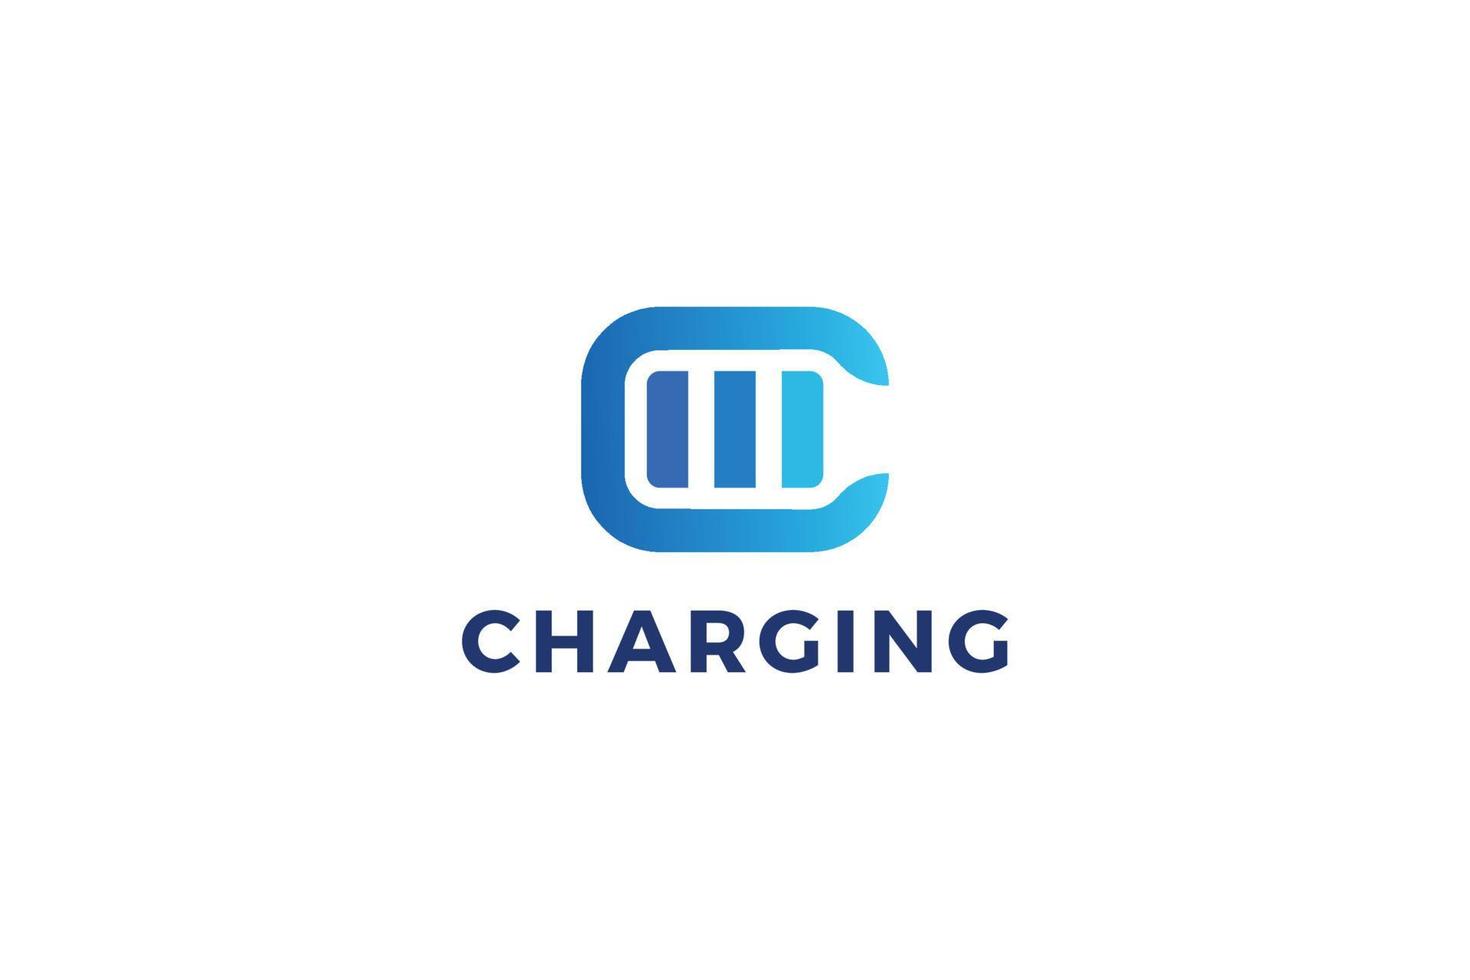 Letter C charging business logo design vector